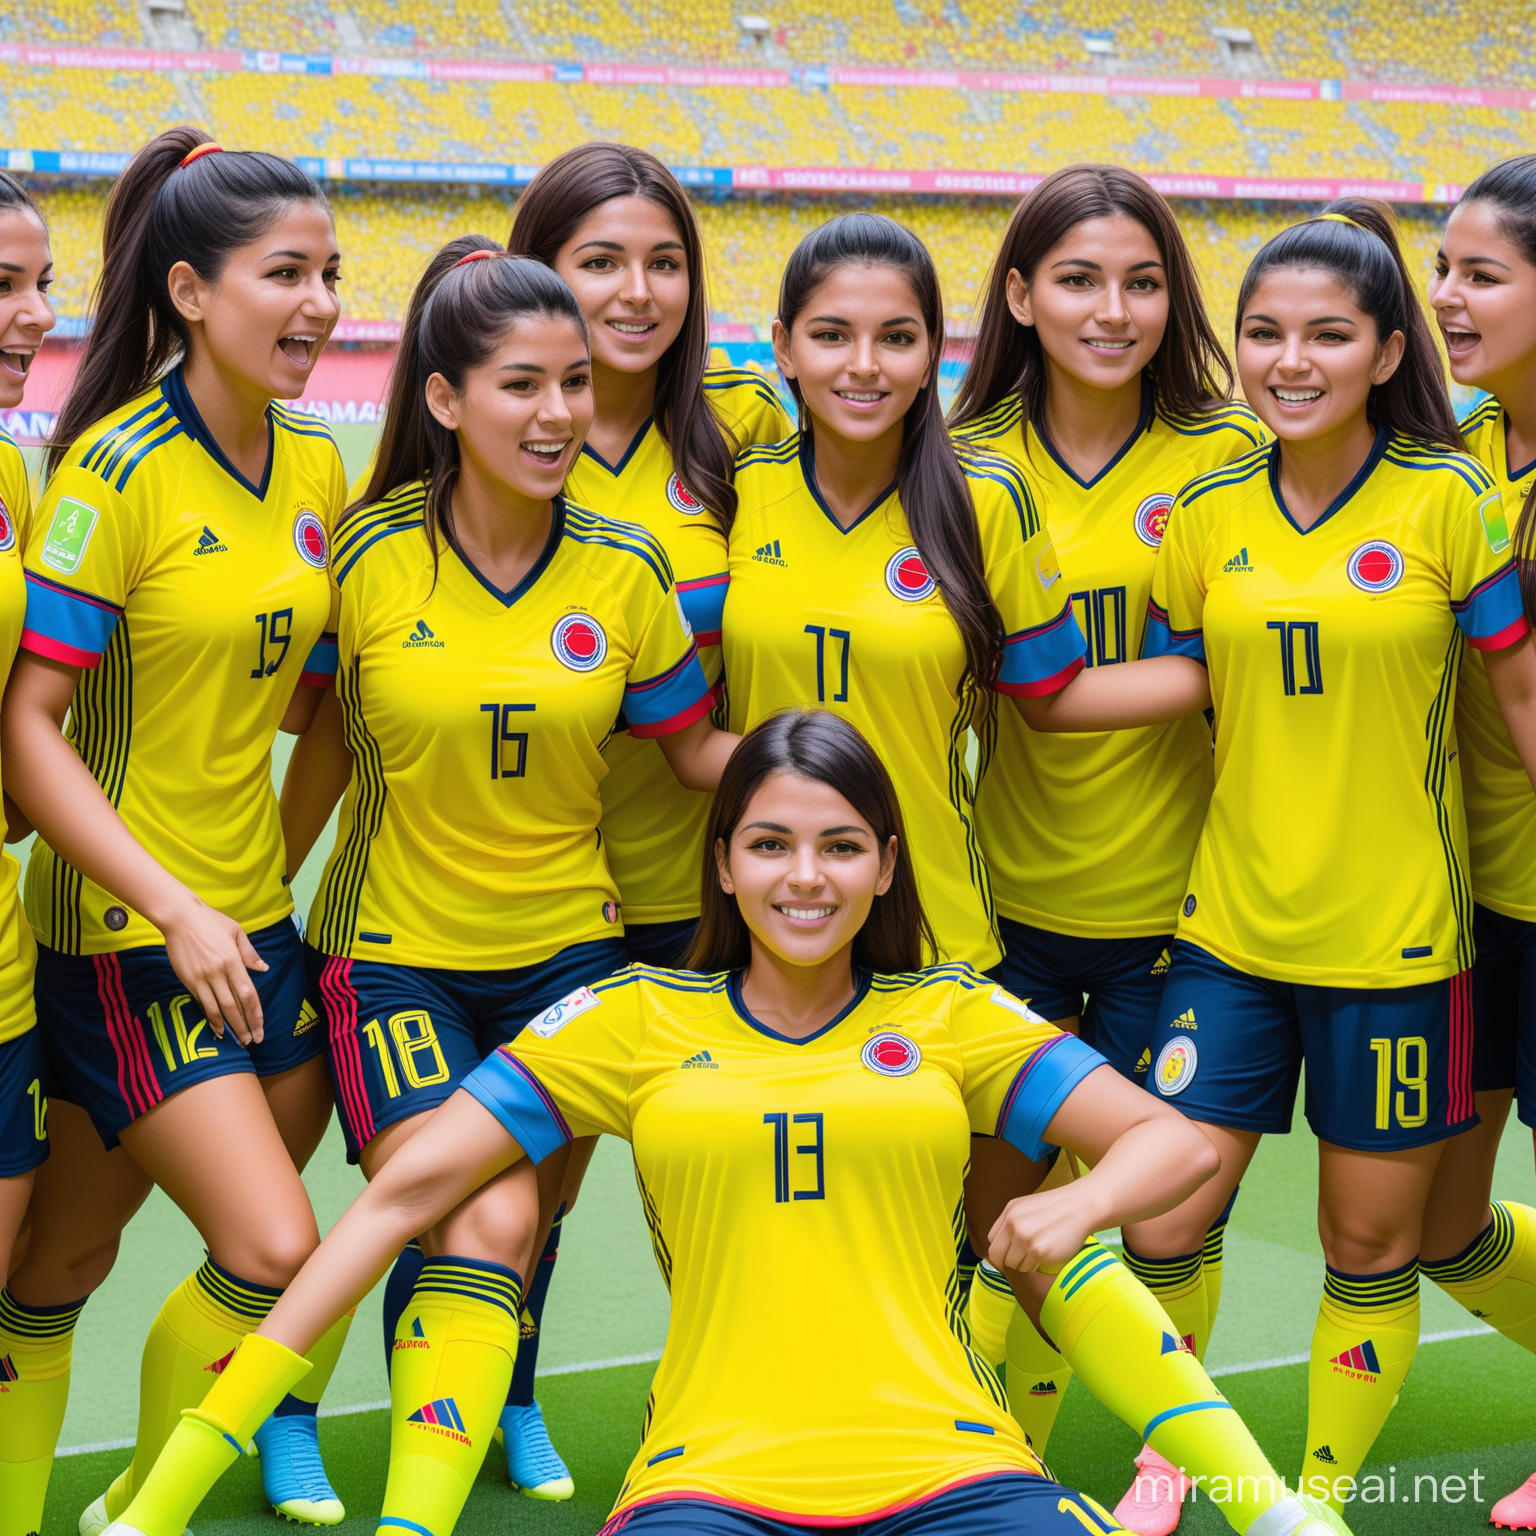 selección colombiana de futbol femenino, en un estadio de futbol llego de personas, con camiseta amarrilla